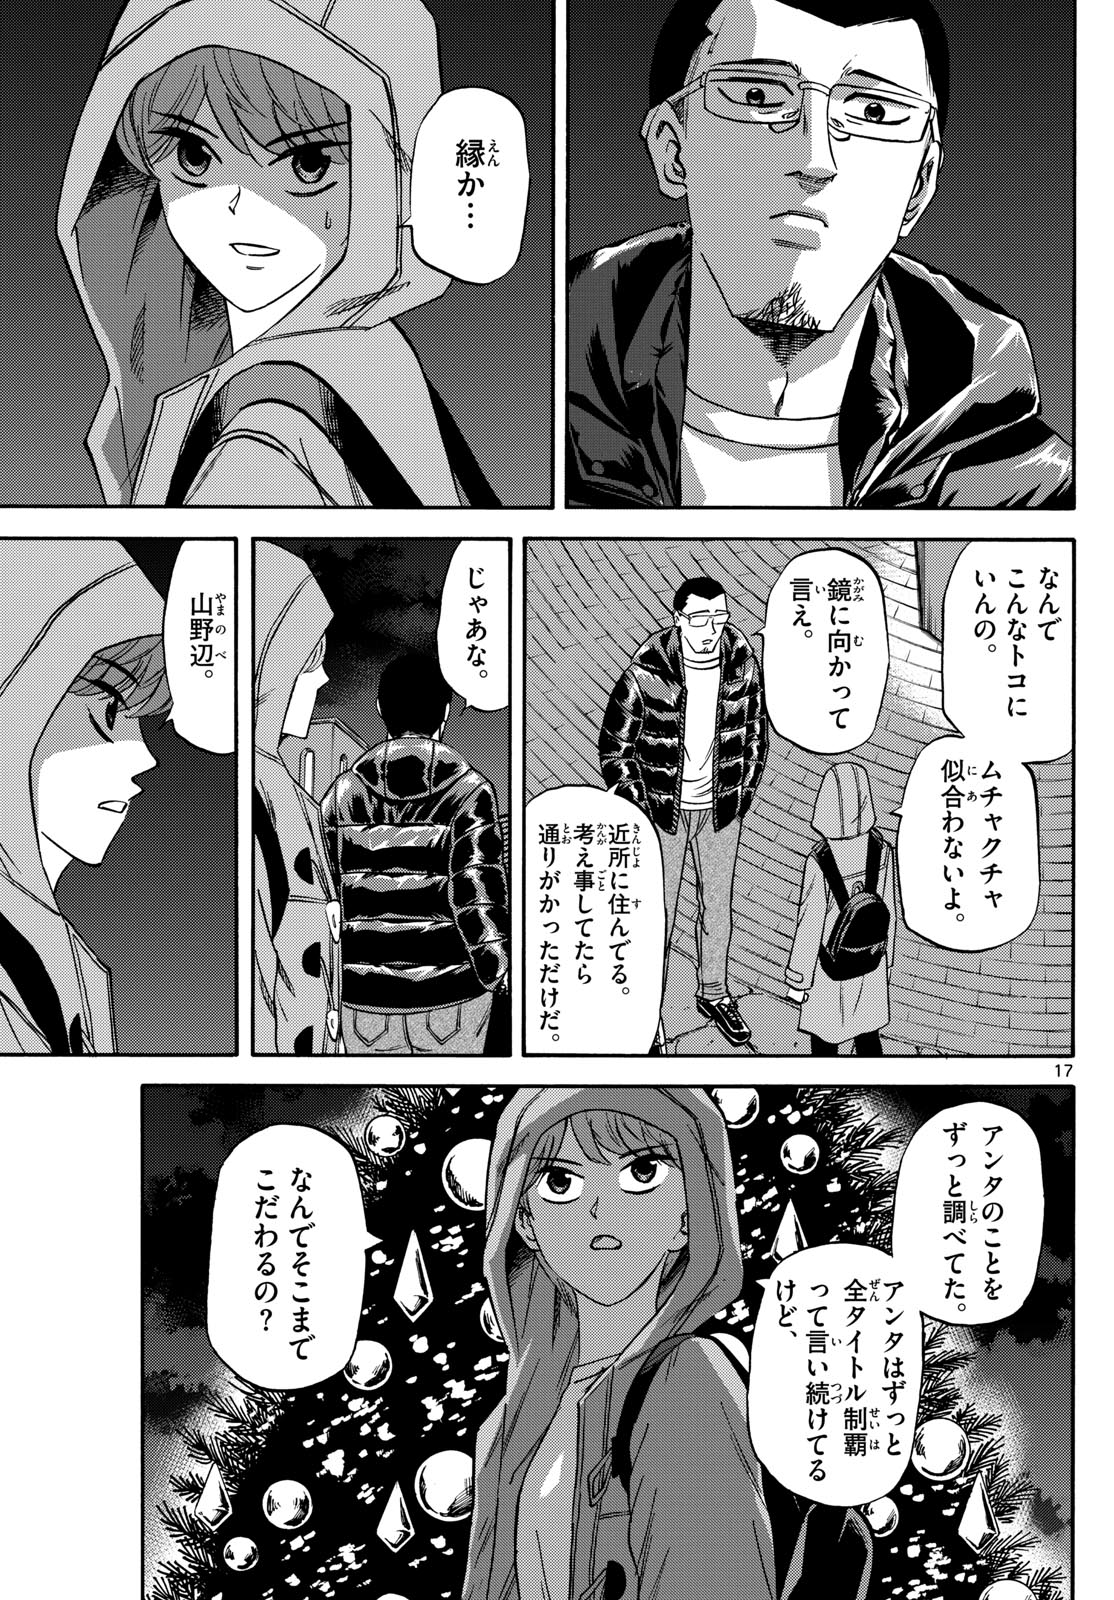 Tatsu to Ichigo - Chapter 173 - Page 17